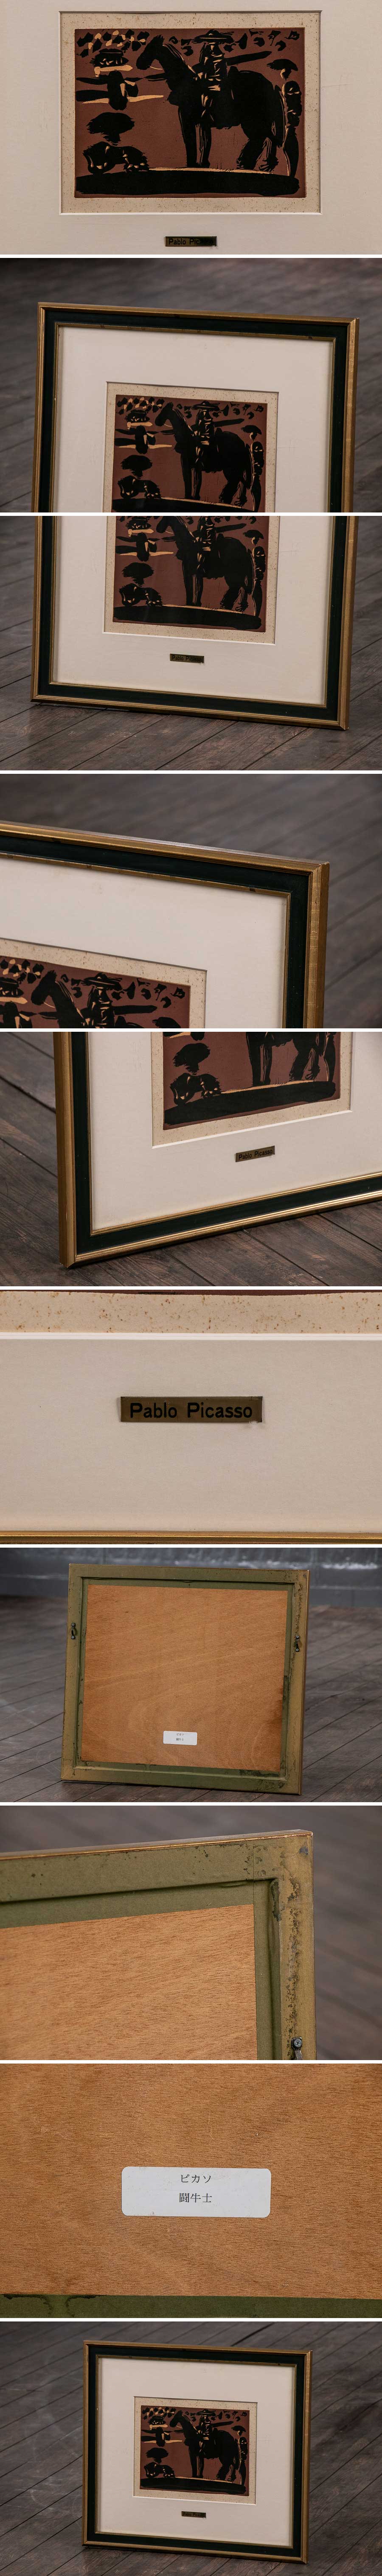 買物代行『 パブロ・ピカソ 「 闘牛士 」 アクリル板 額装 S570 』絵画 インテリア アートパネル 風景画 芸術 美術 抽象画 ギャラリーアート その他